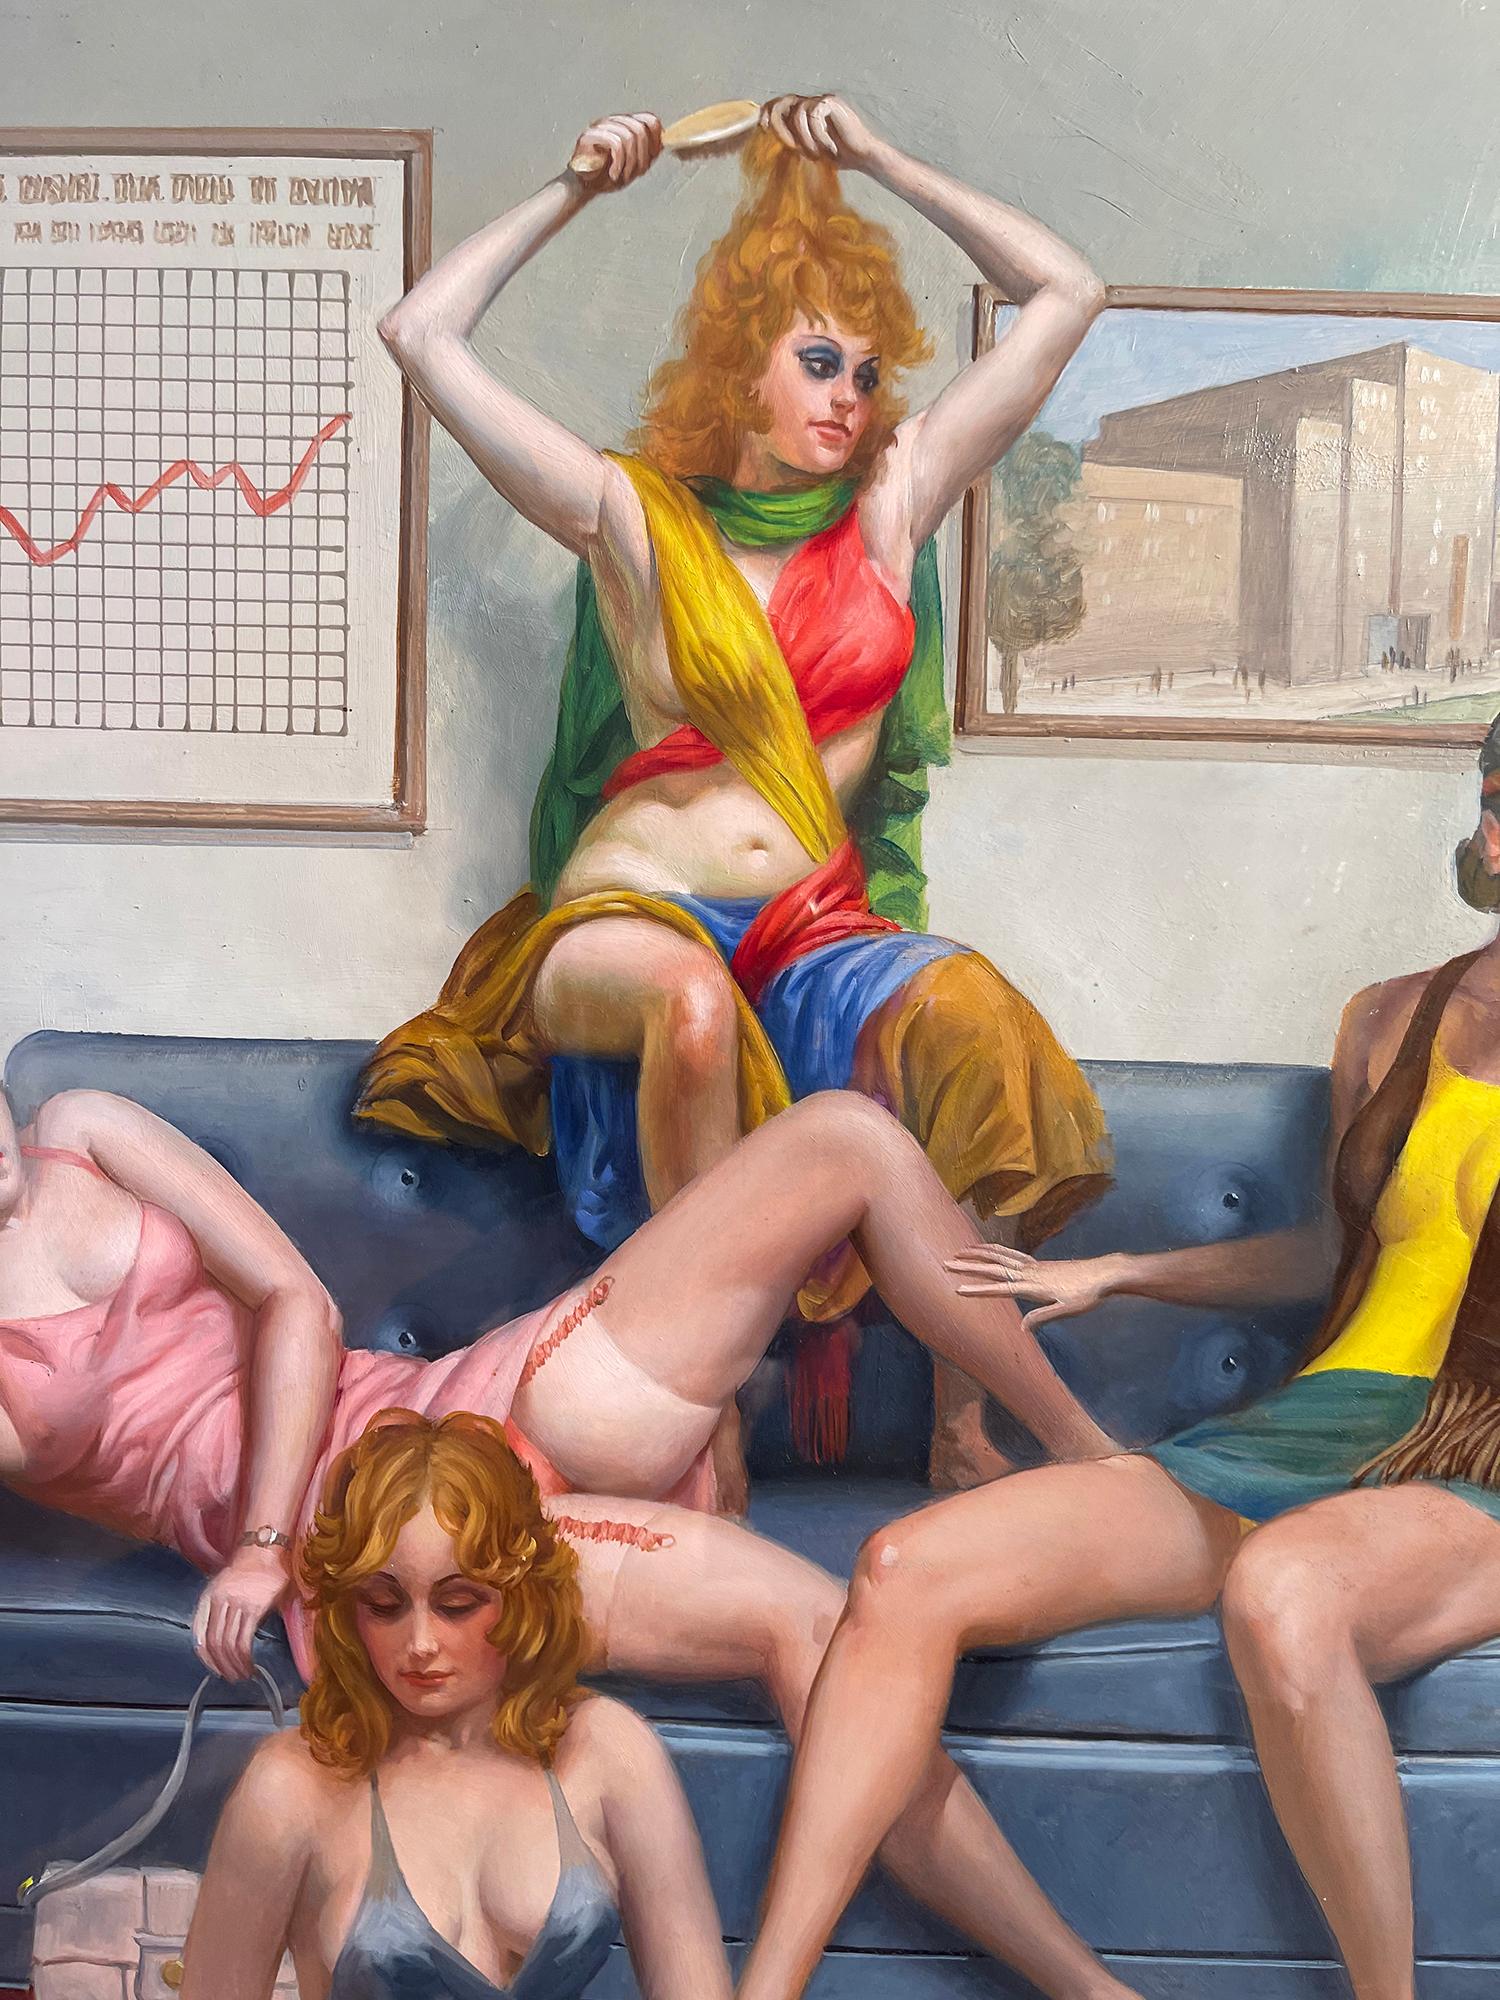 Bordel, Harem groovy avec Courtesan, Concubine, Paramour, Playboy Magazine - Marron Nude Painting par George Hirsch